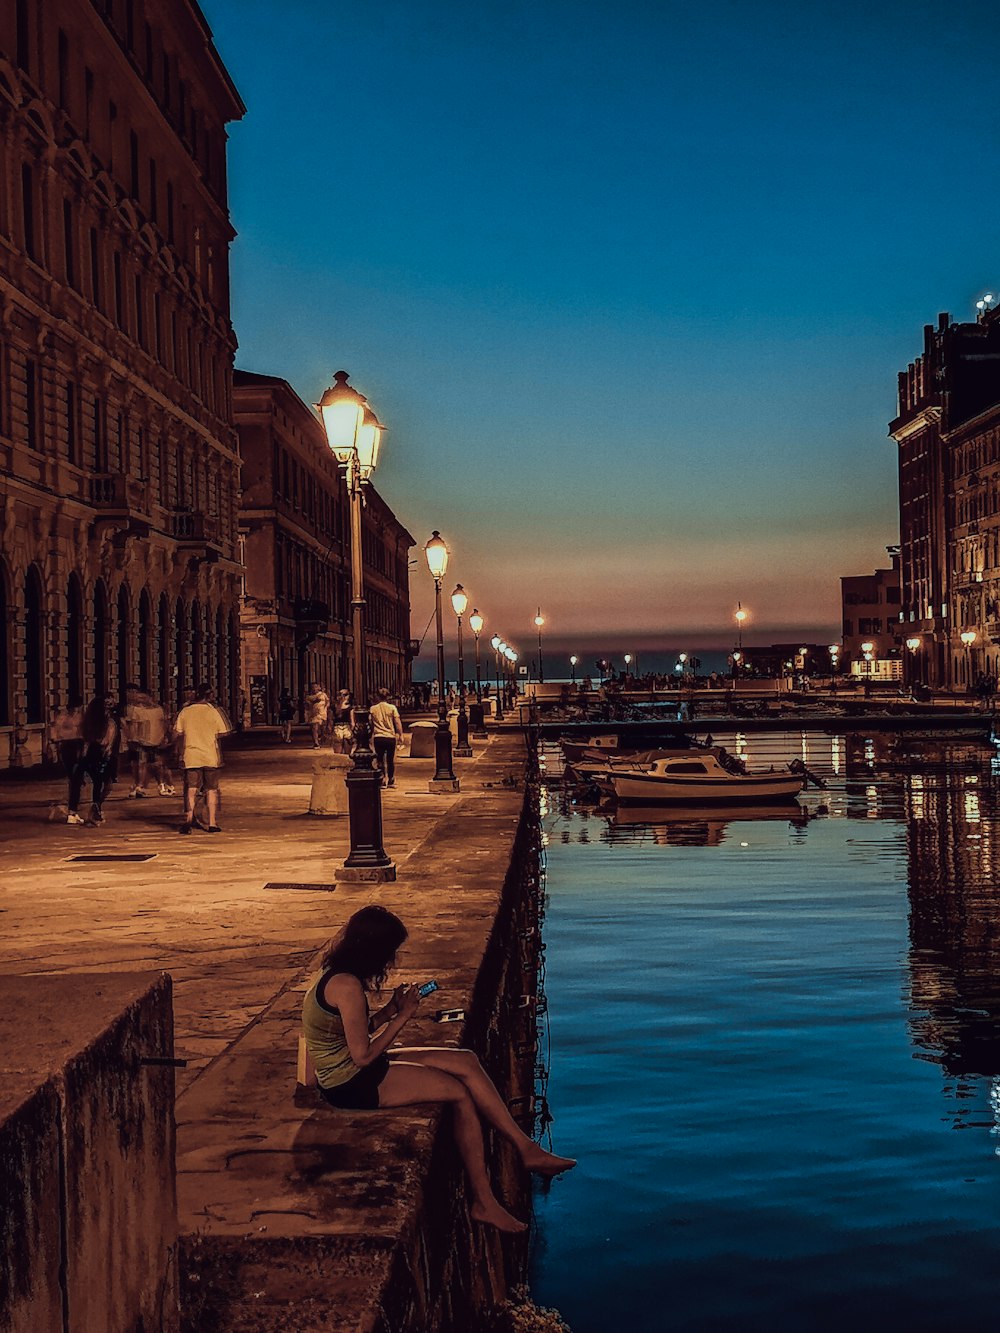 Persone che camminano sul marciapiede vicino al fiume durante la notte